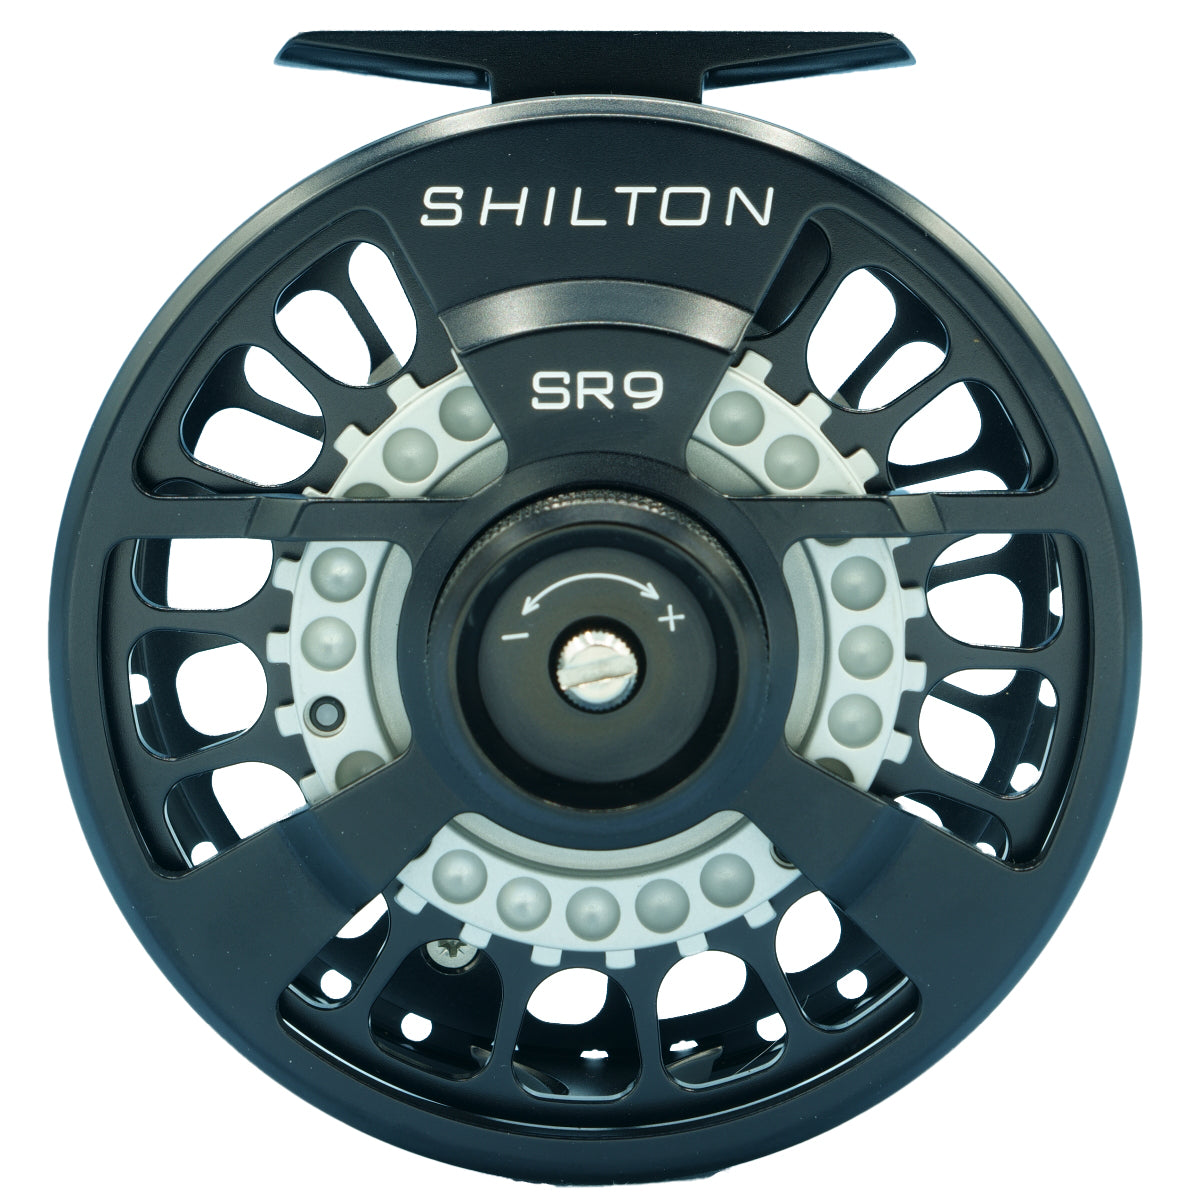 Shilton SR9 (8-9wt) Reel Black Right Hand – Madison River Fishing